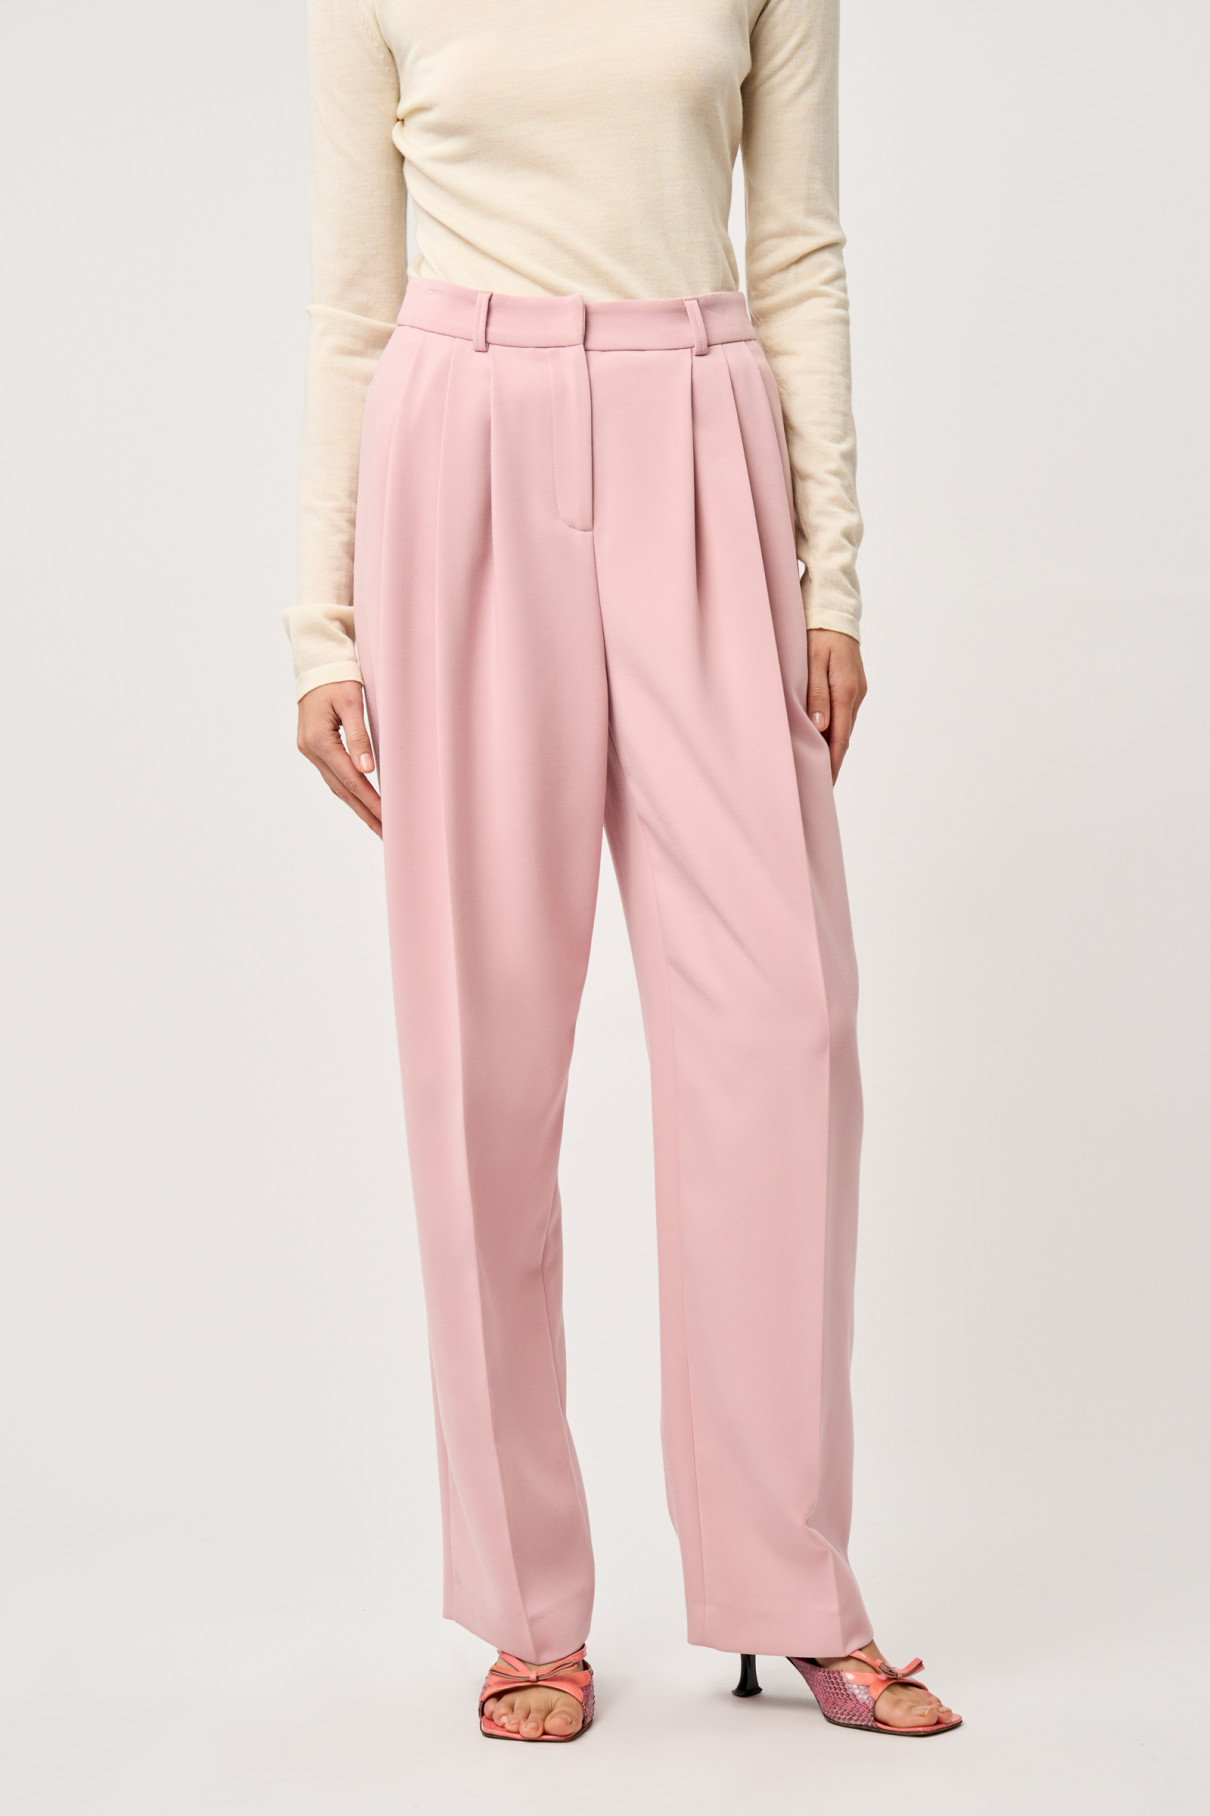 Прямые брюки со складками Розовый , арт. FR2204FWPINK купить в интернет-магазине